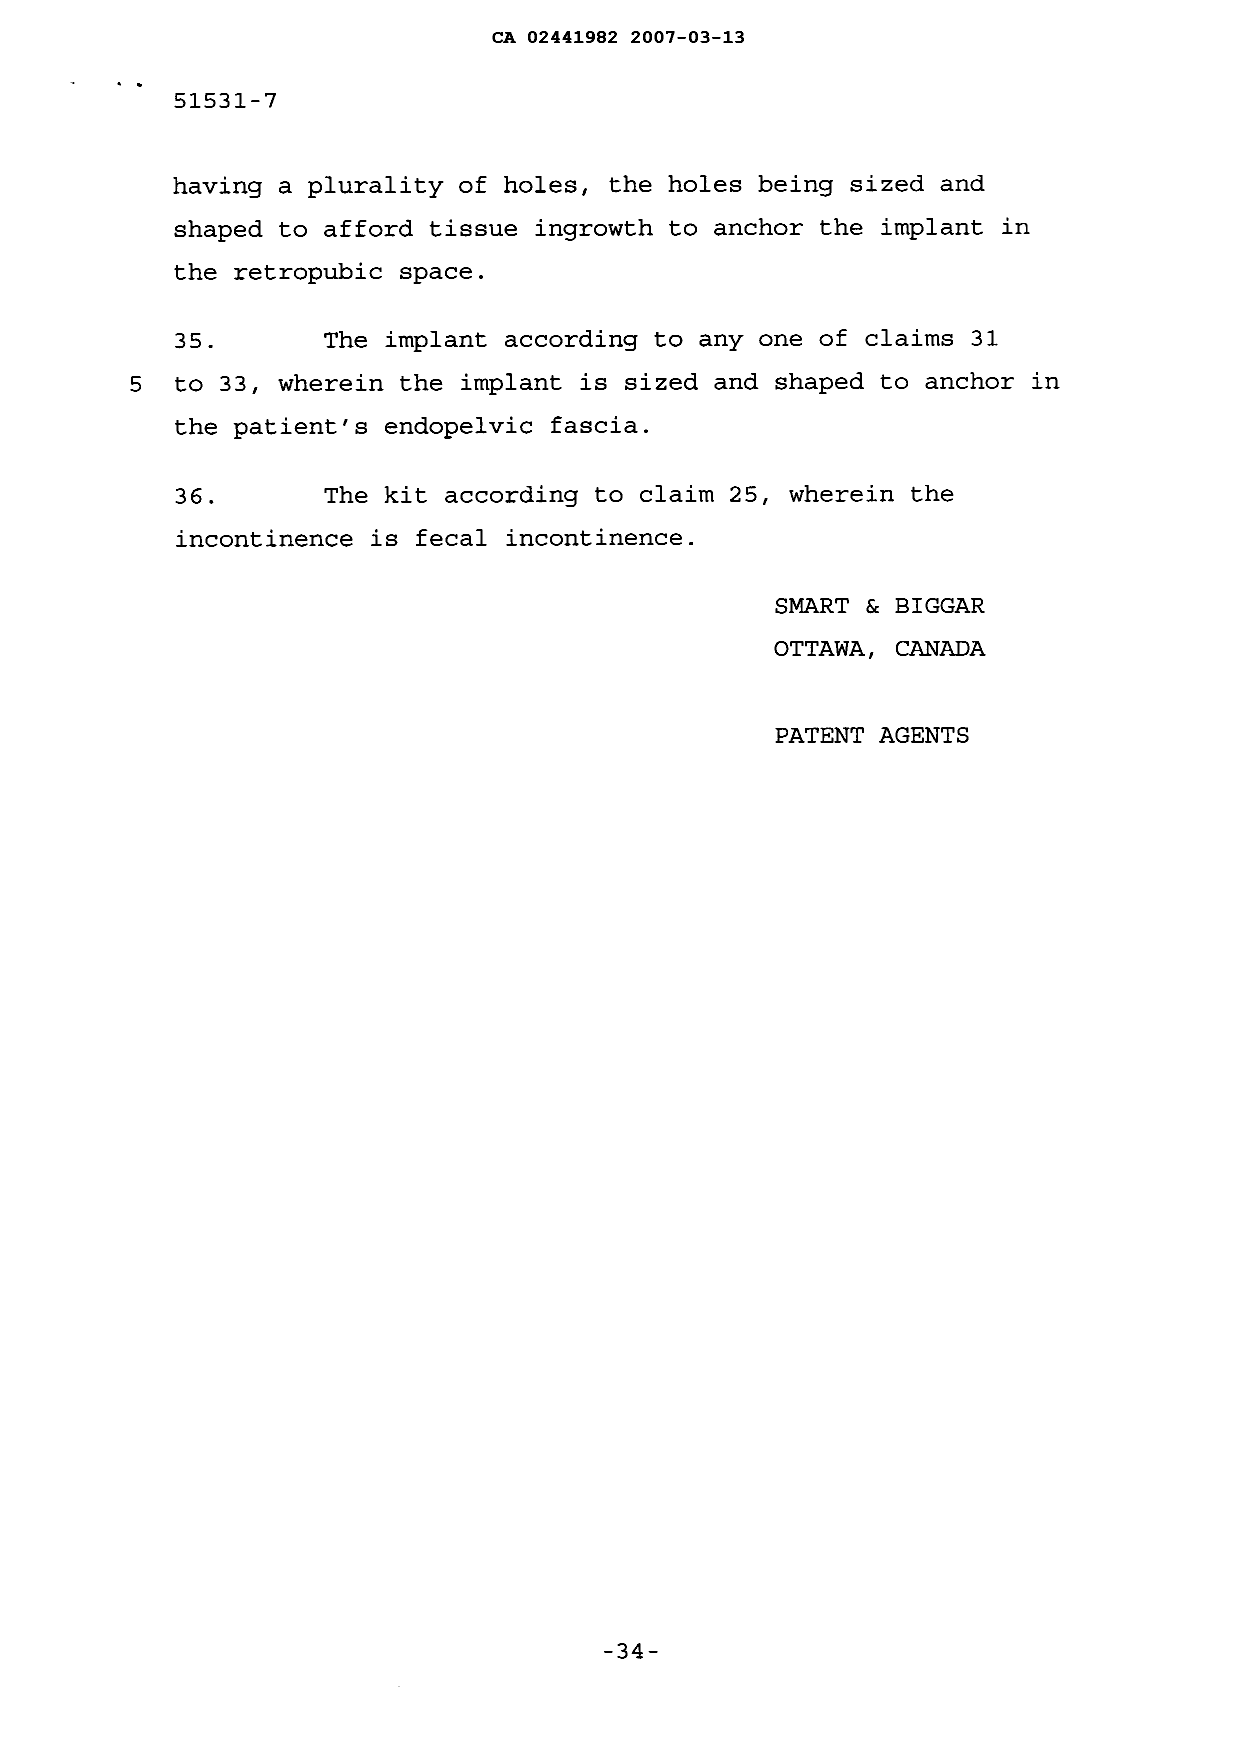 Document de brevet canadien 2441982. Poursuite-Amendment 20061213. Image 13 de 13